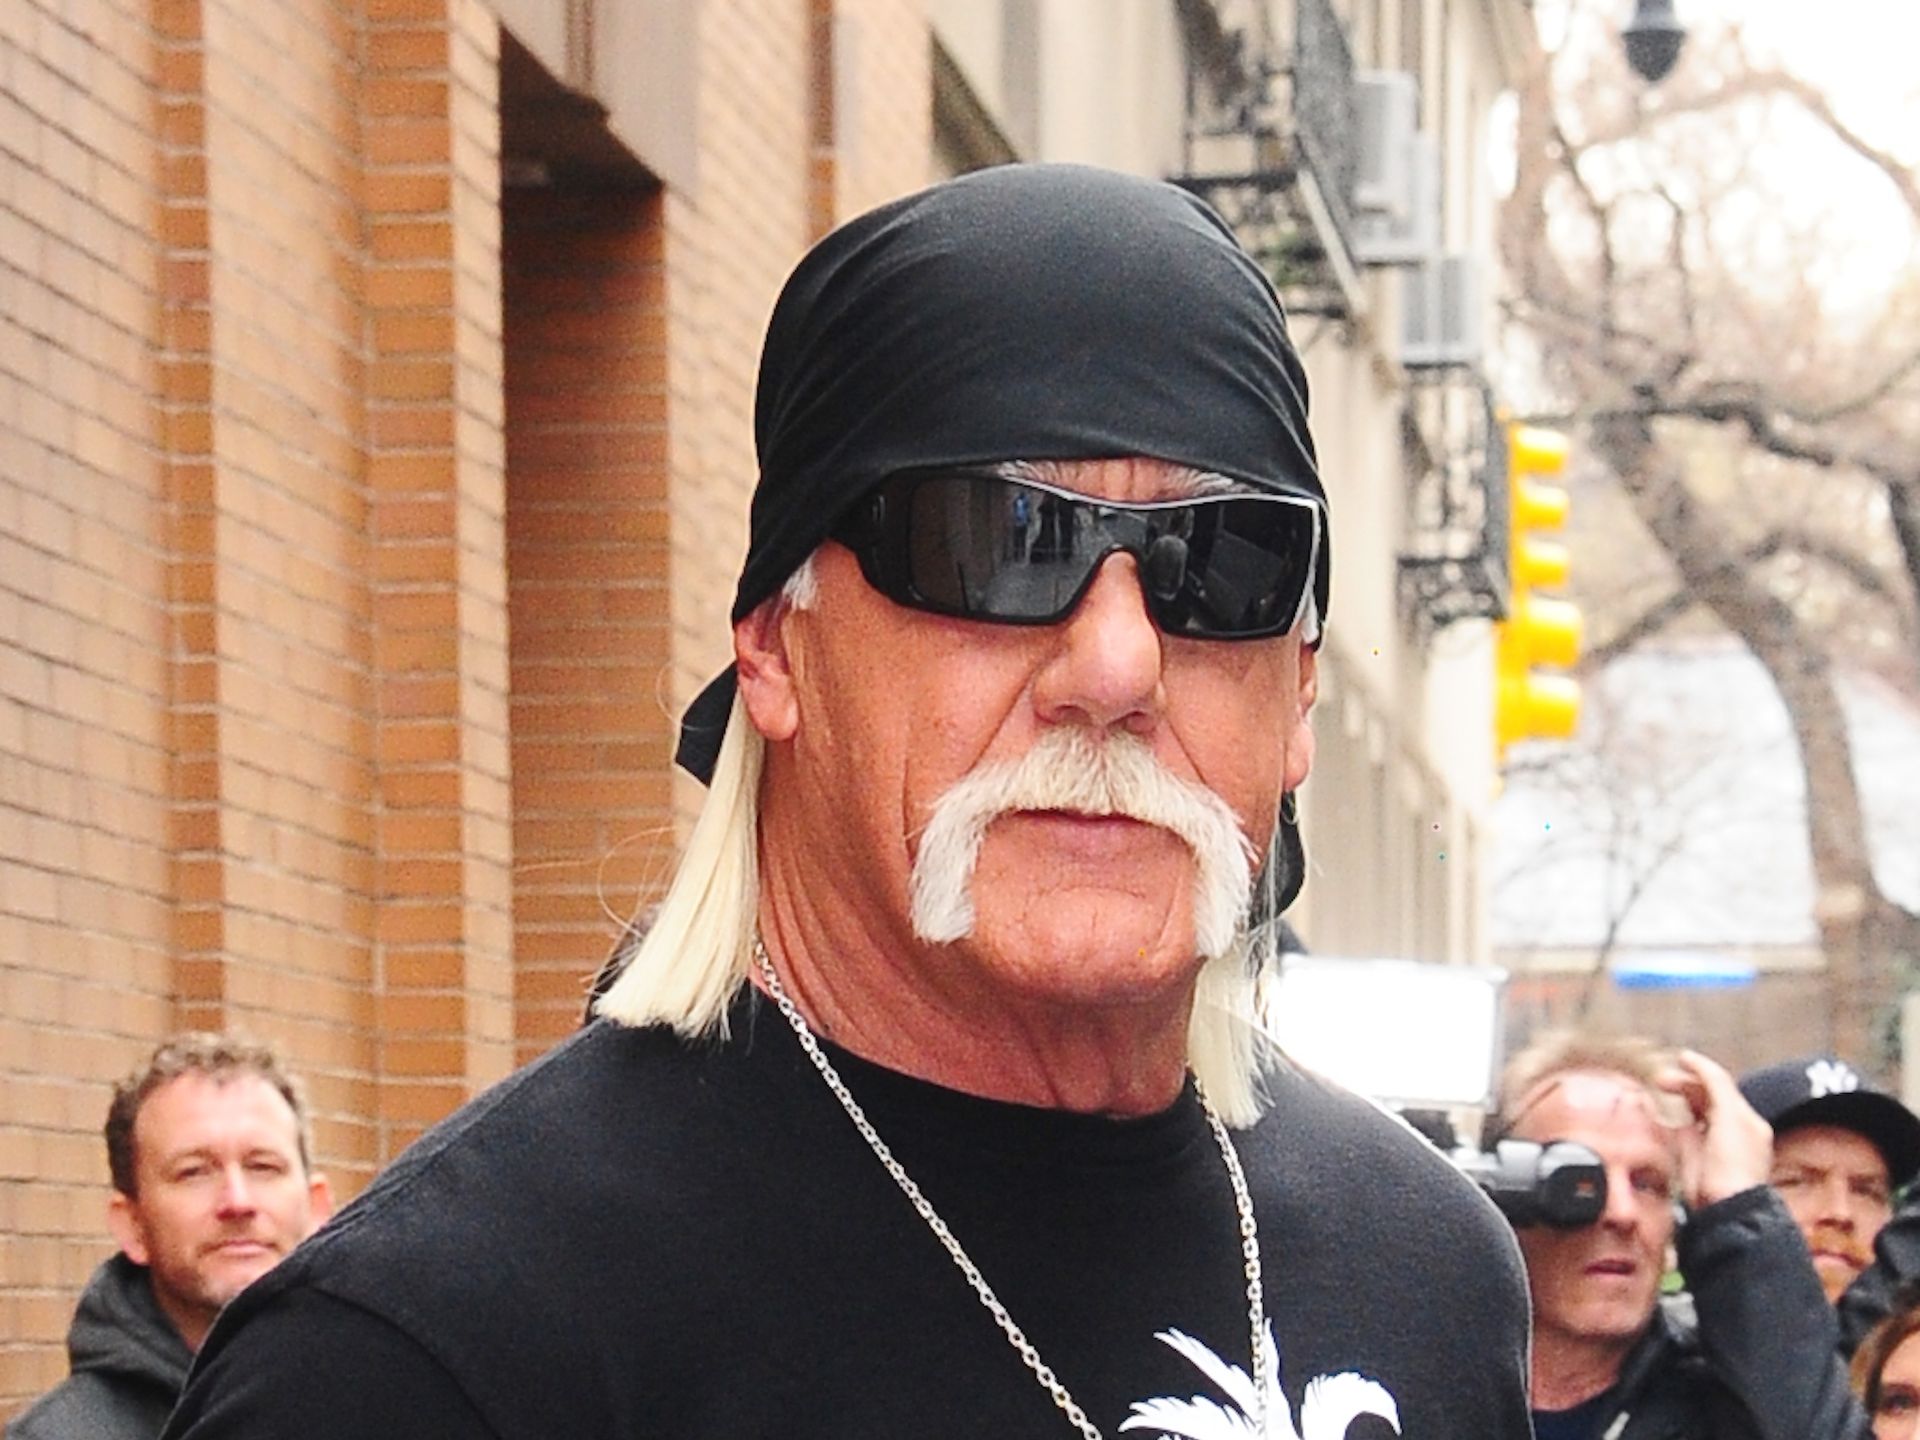 Hulk Hogan 2022 Wife